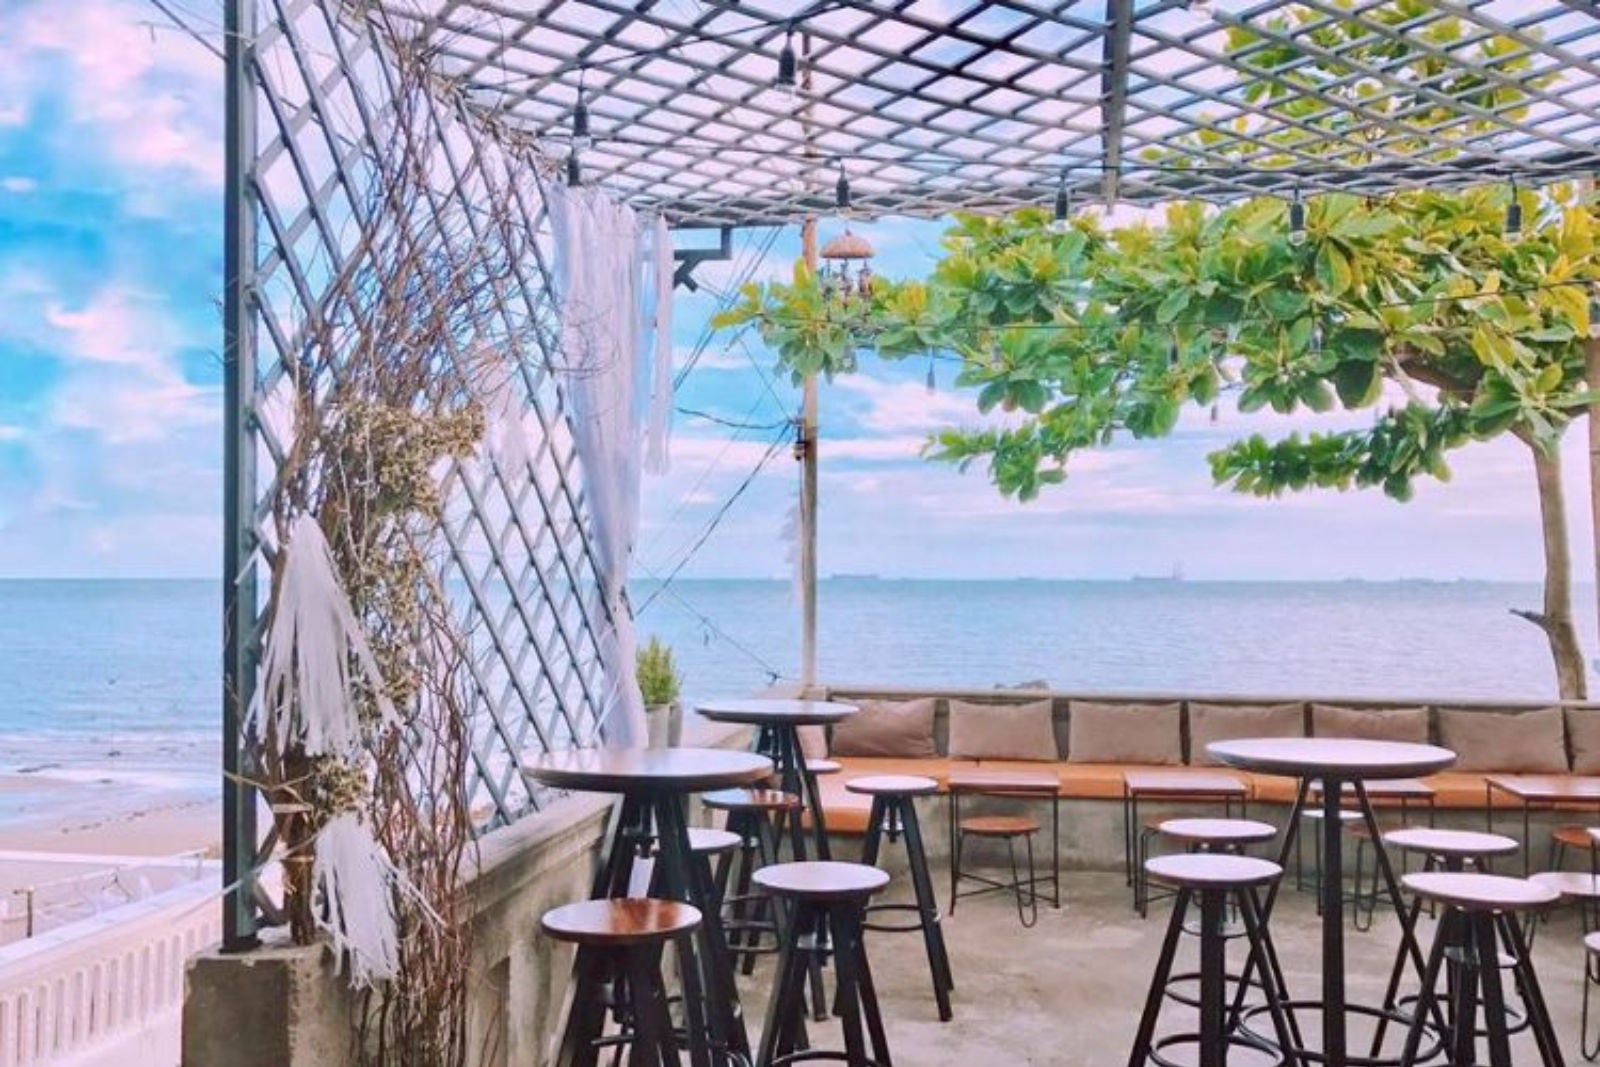 Cafe biển đẹp Vũng Tàu